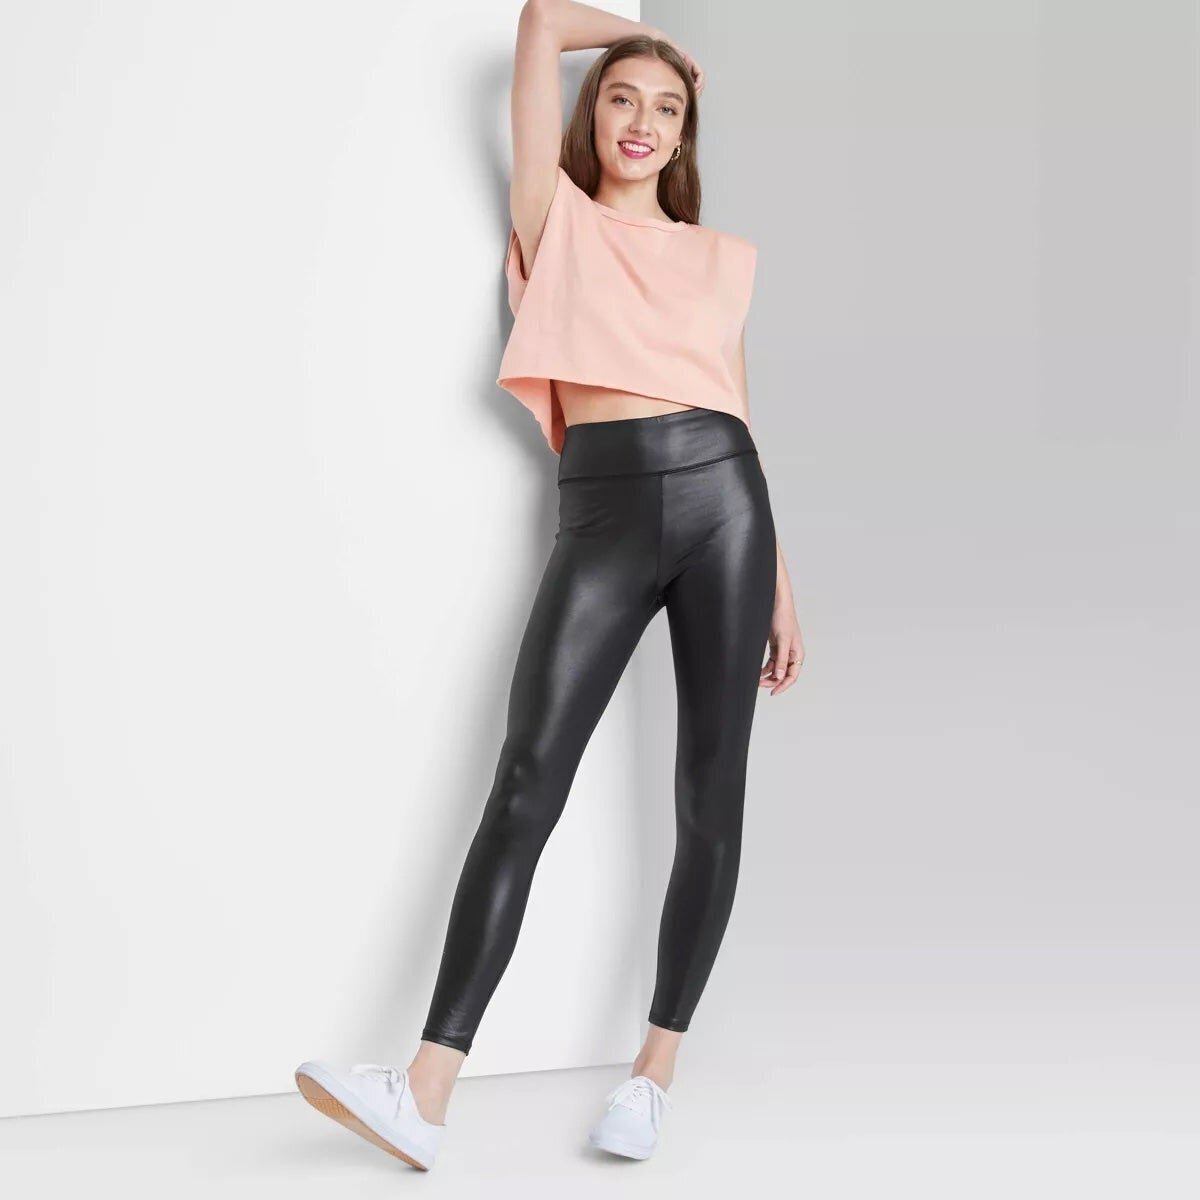 Model wearing faux leather leggings